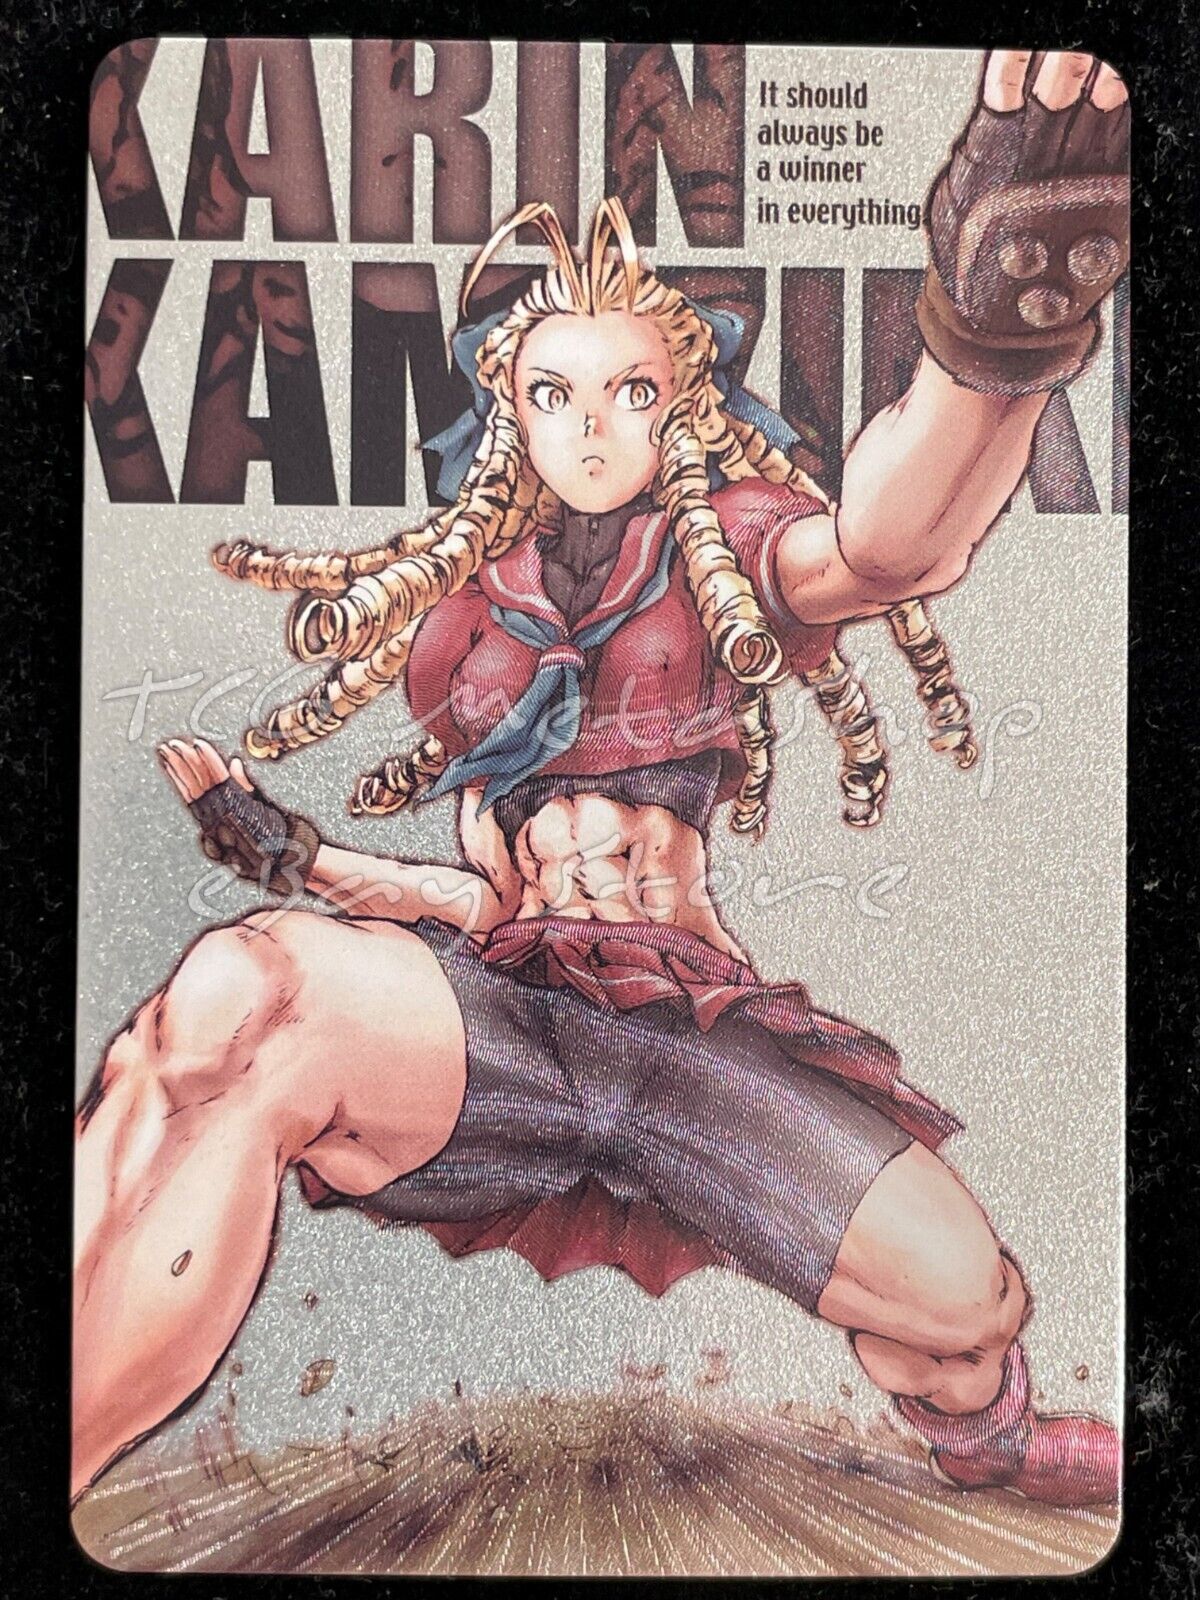 🔥 Karin Street Fighter Goddess Story Anime Card ACG # 2344 🔥